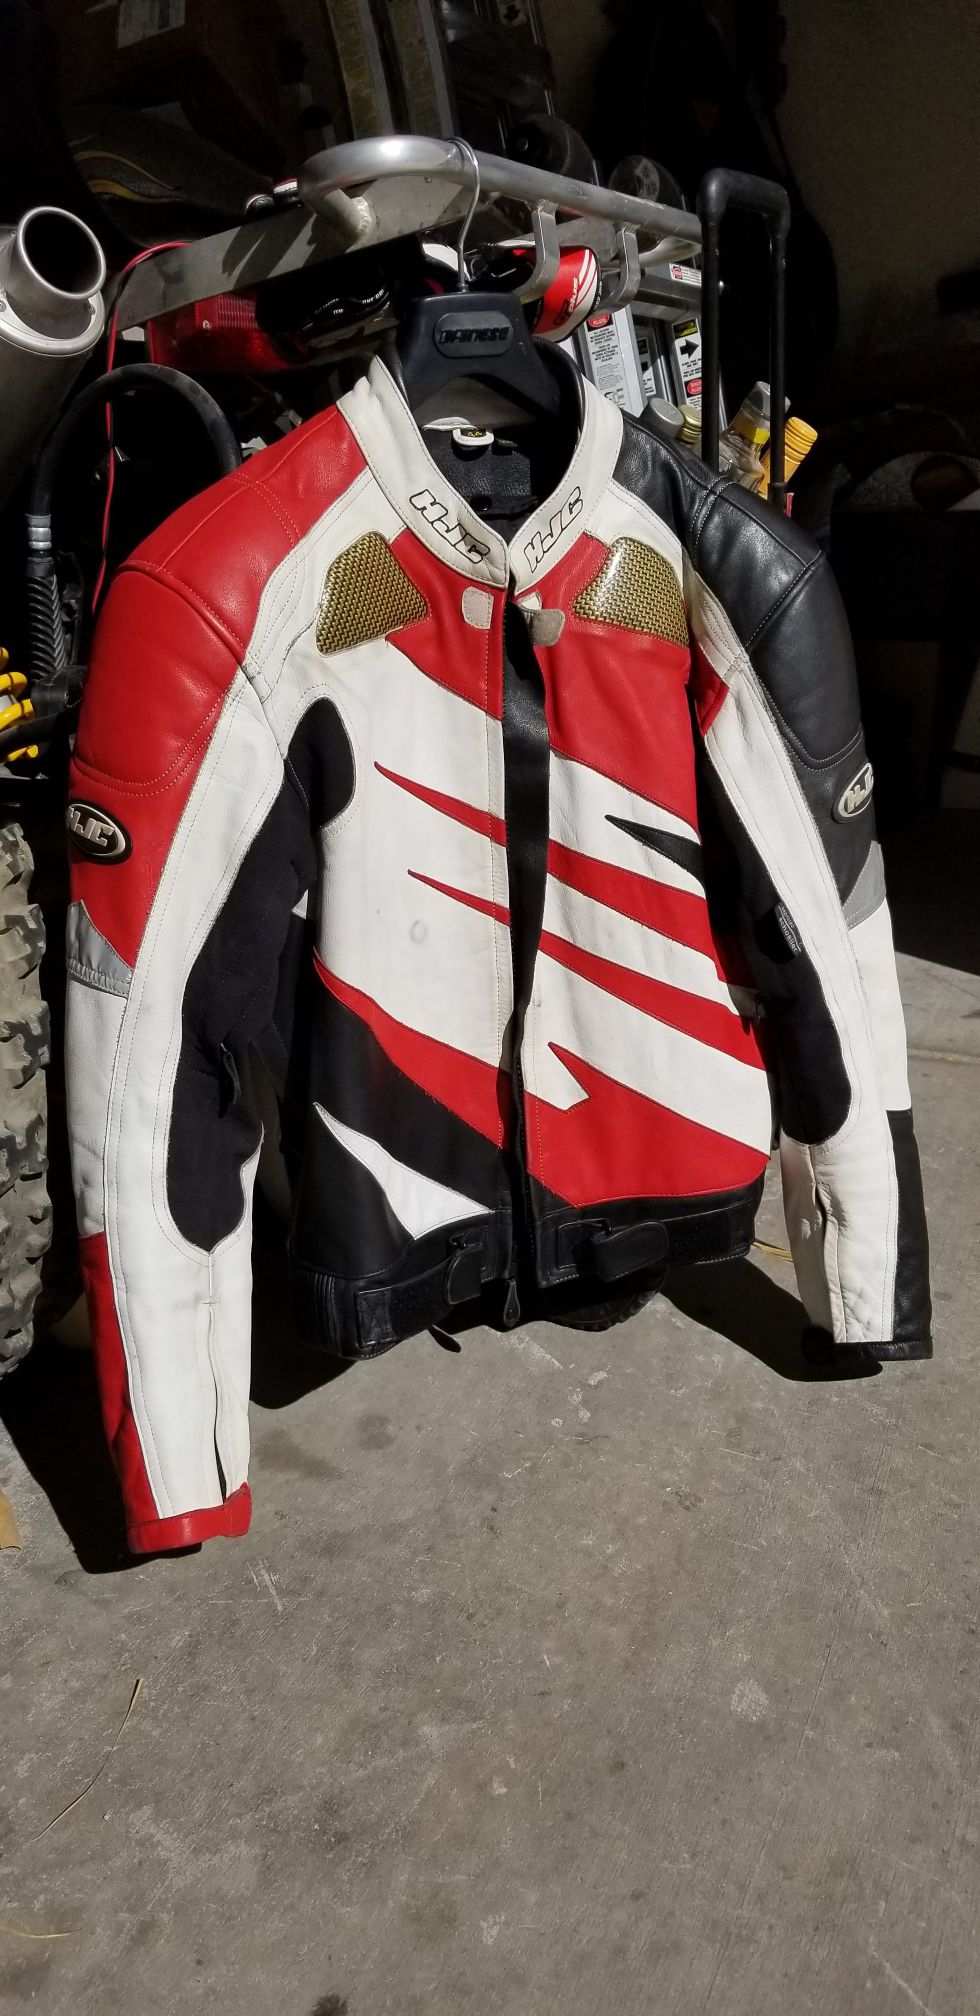 HJC size 44 leather motorcycle jacket